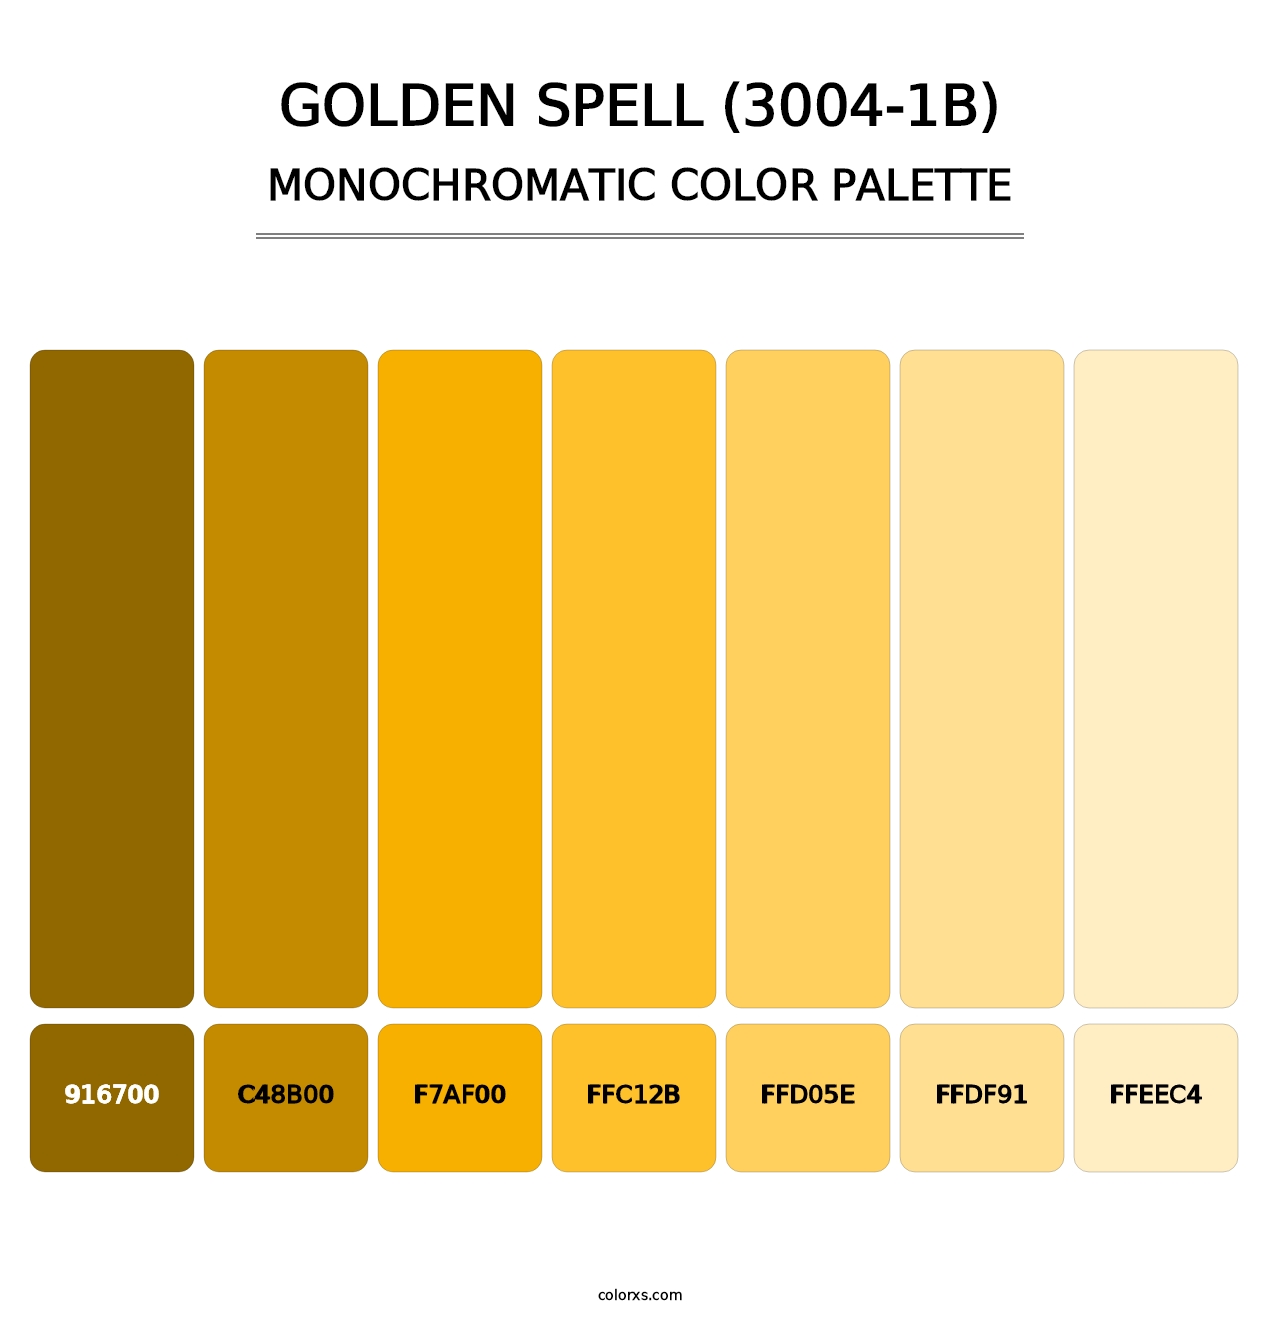 Golden Spell (3004-1B) - Monochromatic Color Palette